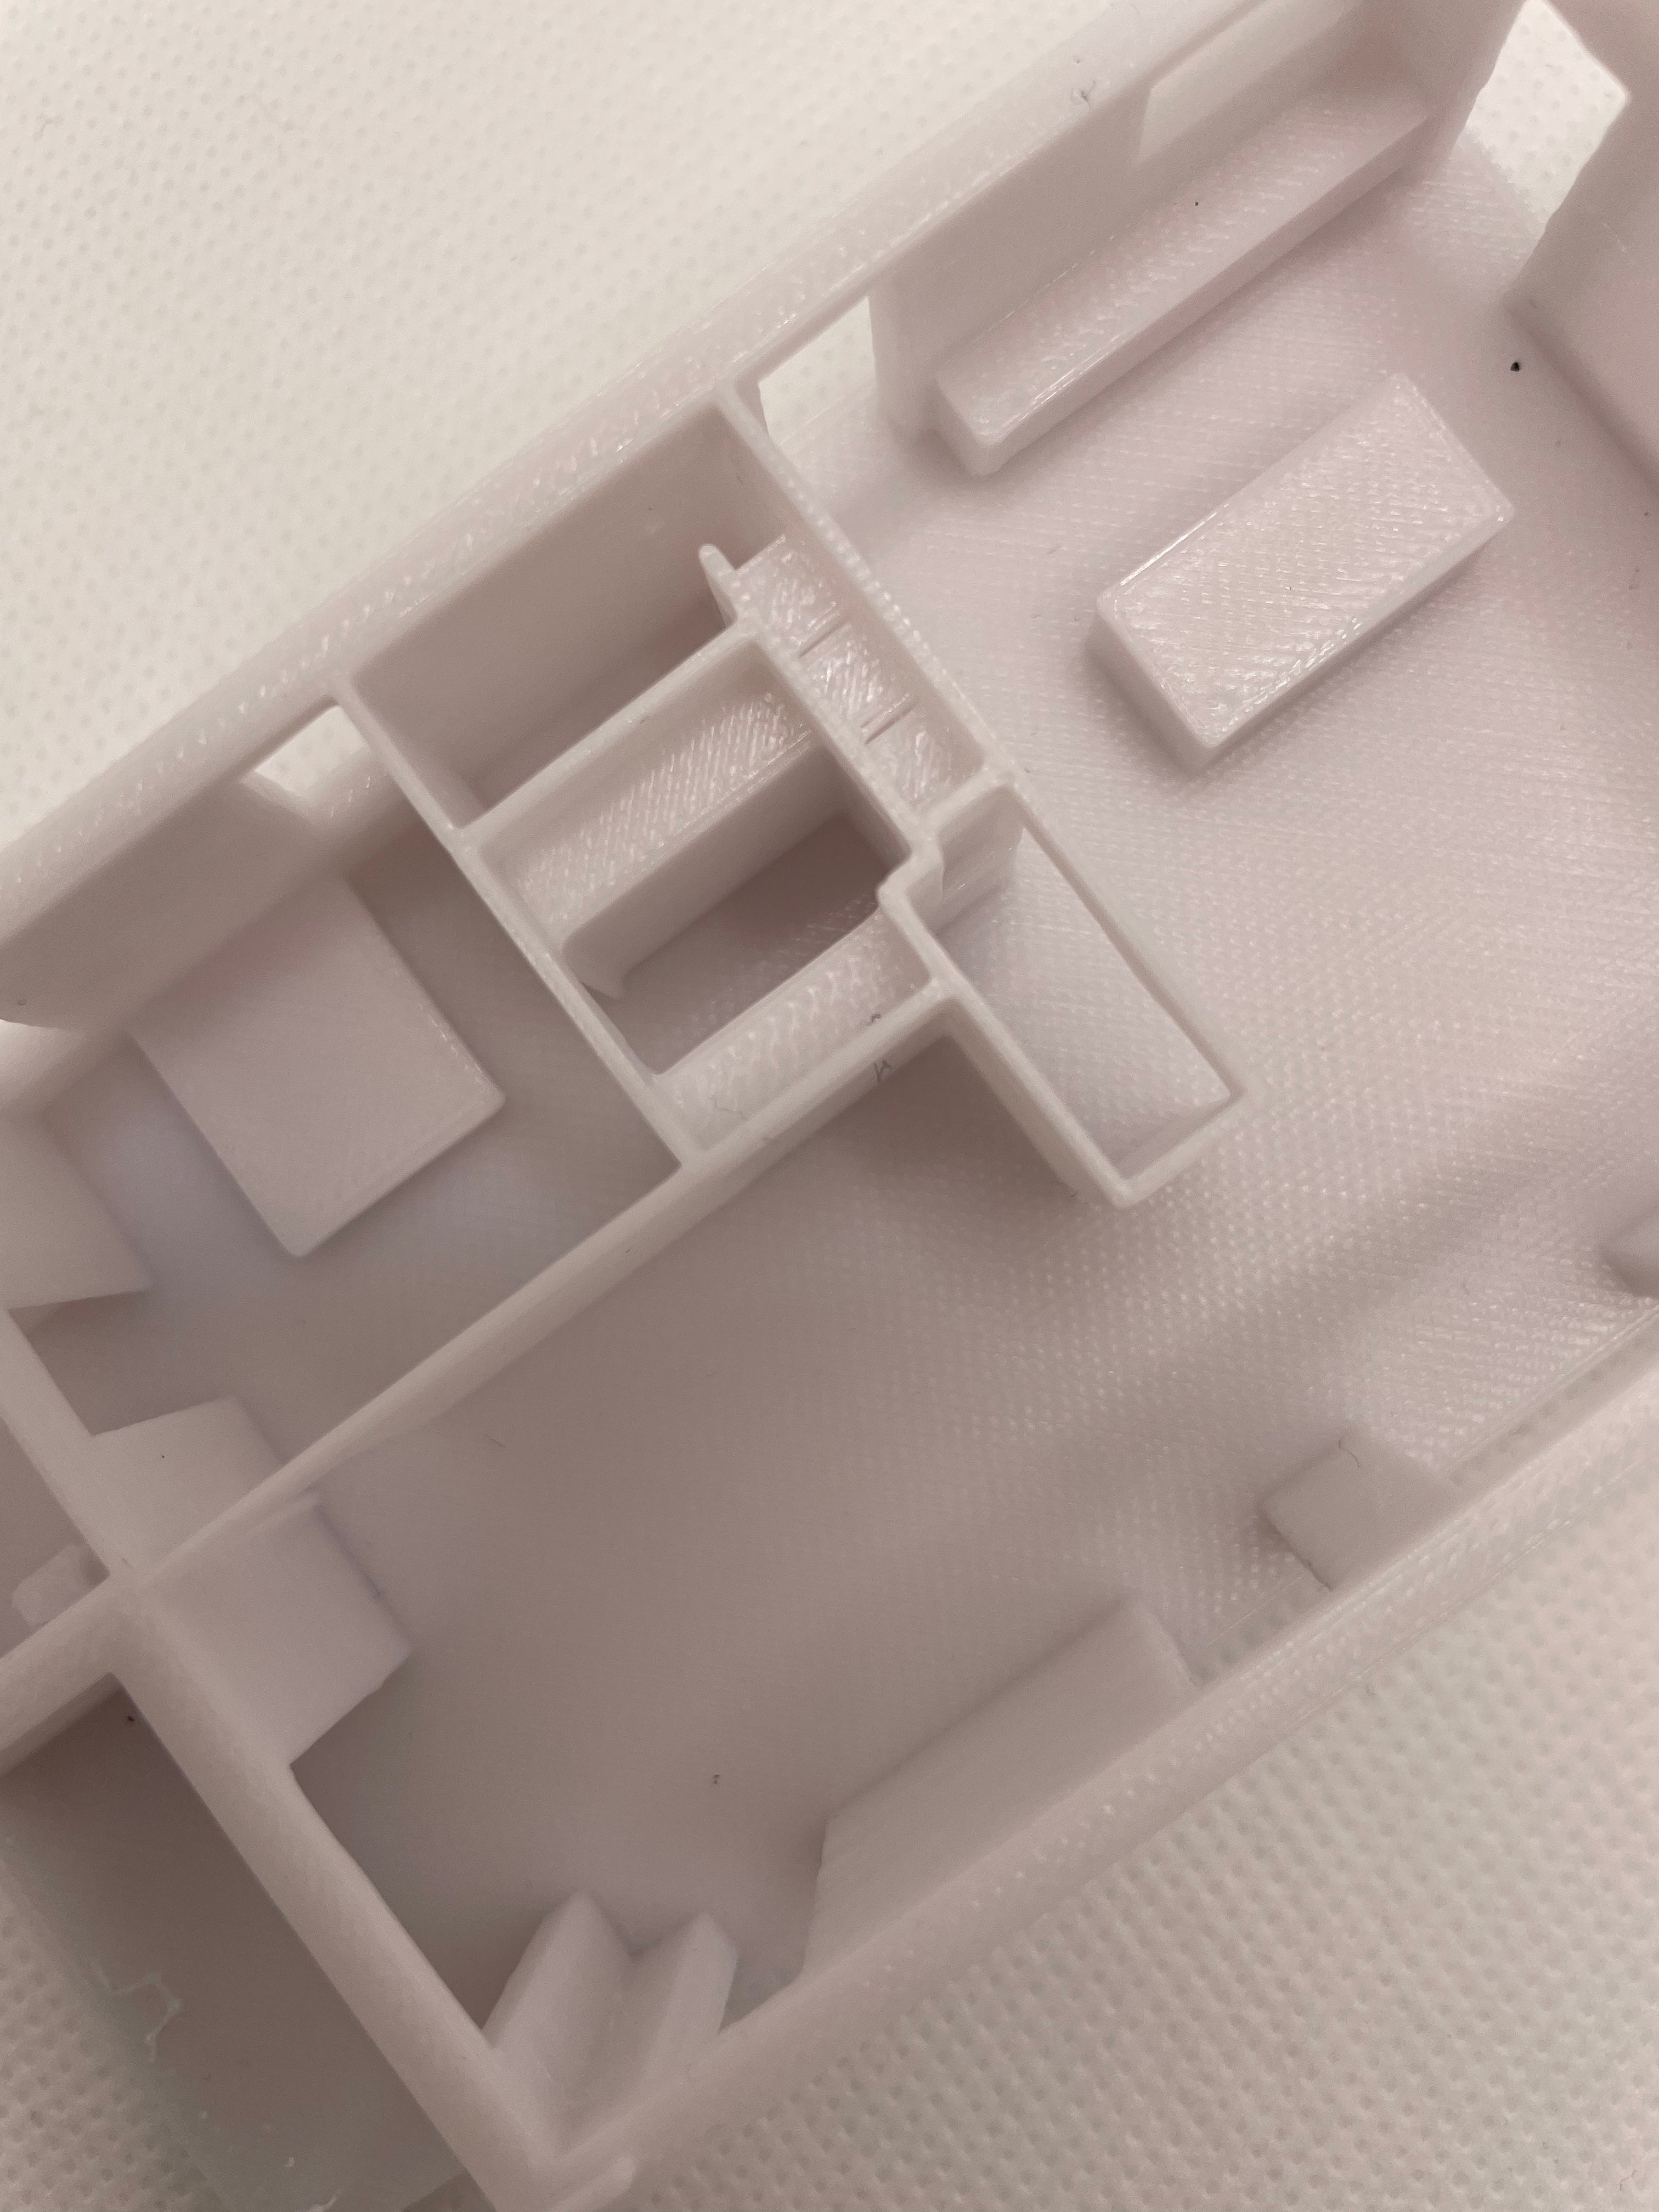 Casa stampata in 3D dalla planimetria